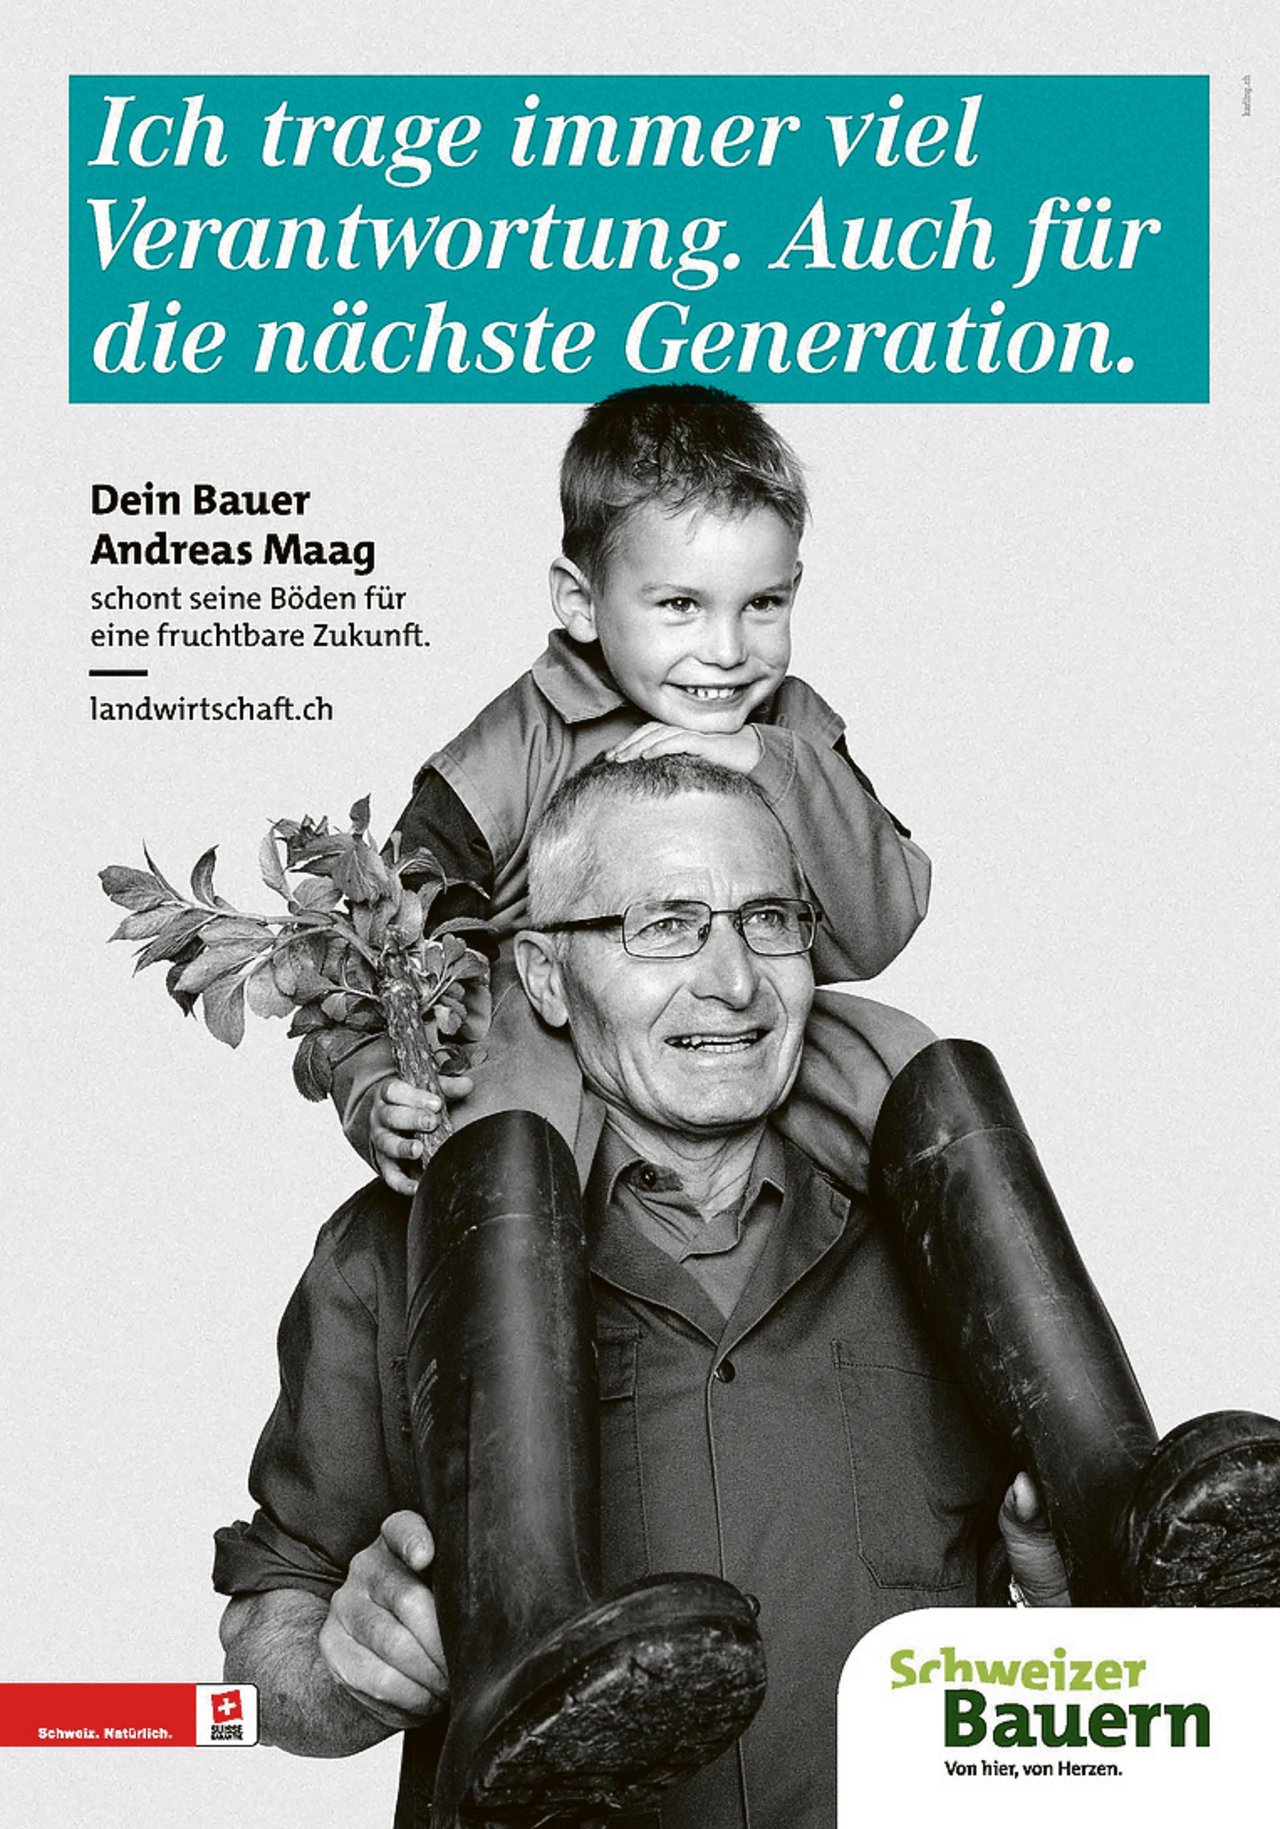 Andreas Maag und sein Enkel auf der Werbekampagne. (Bild zVg)